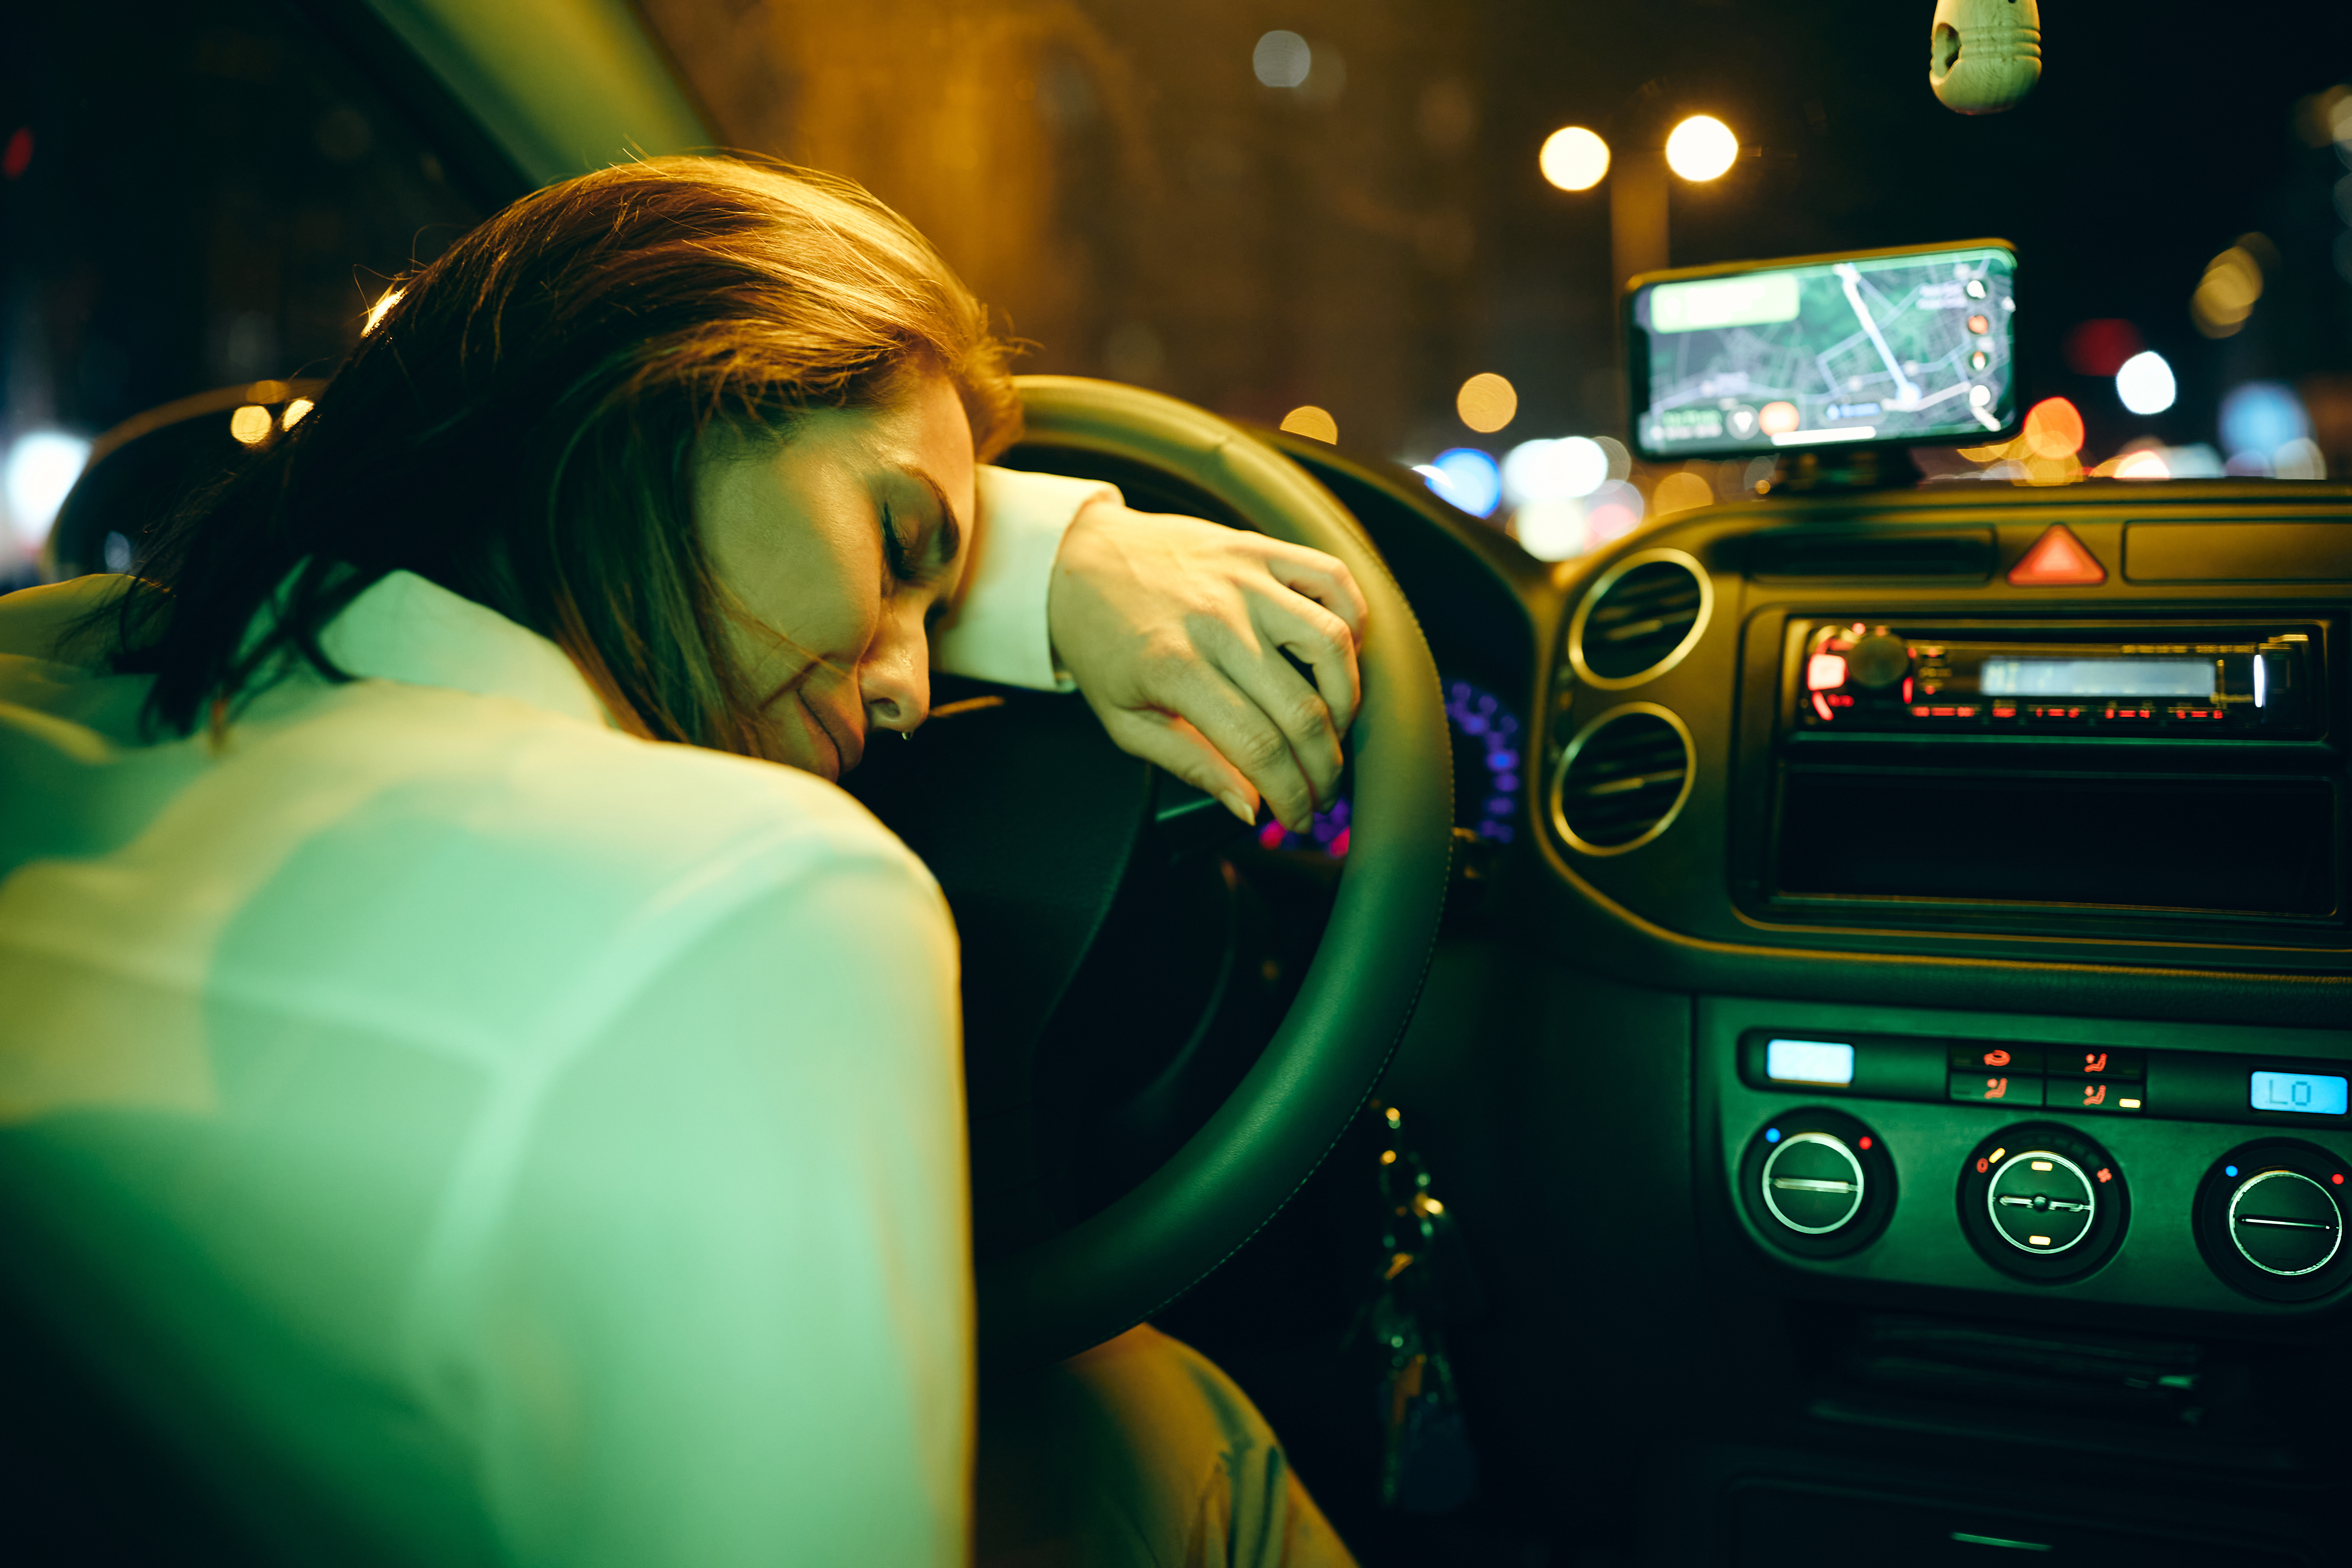 Joven llora apoyada en el volante | Foto: Shutterstock